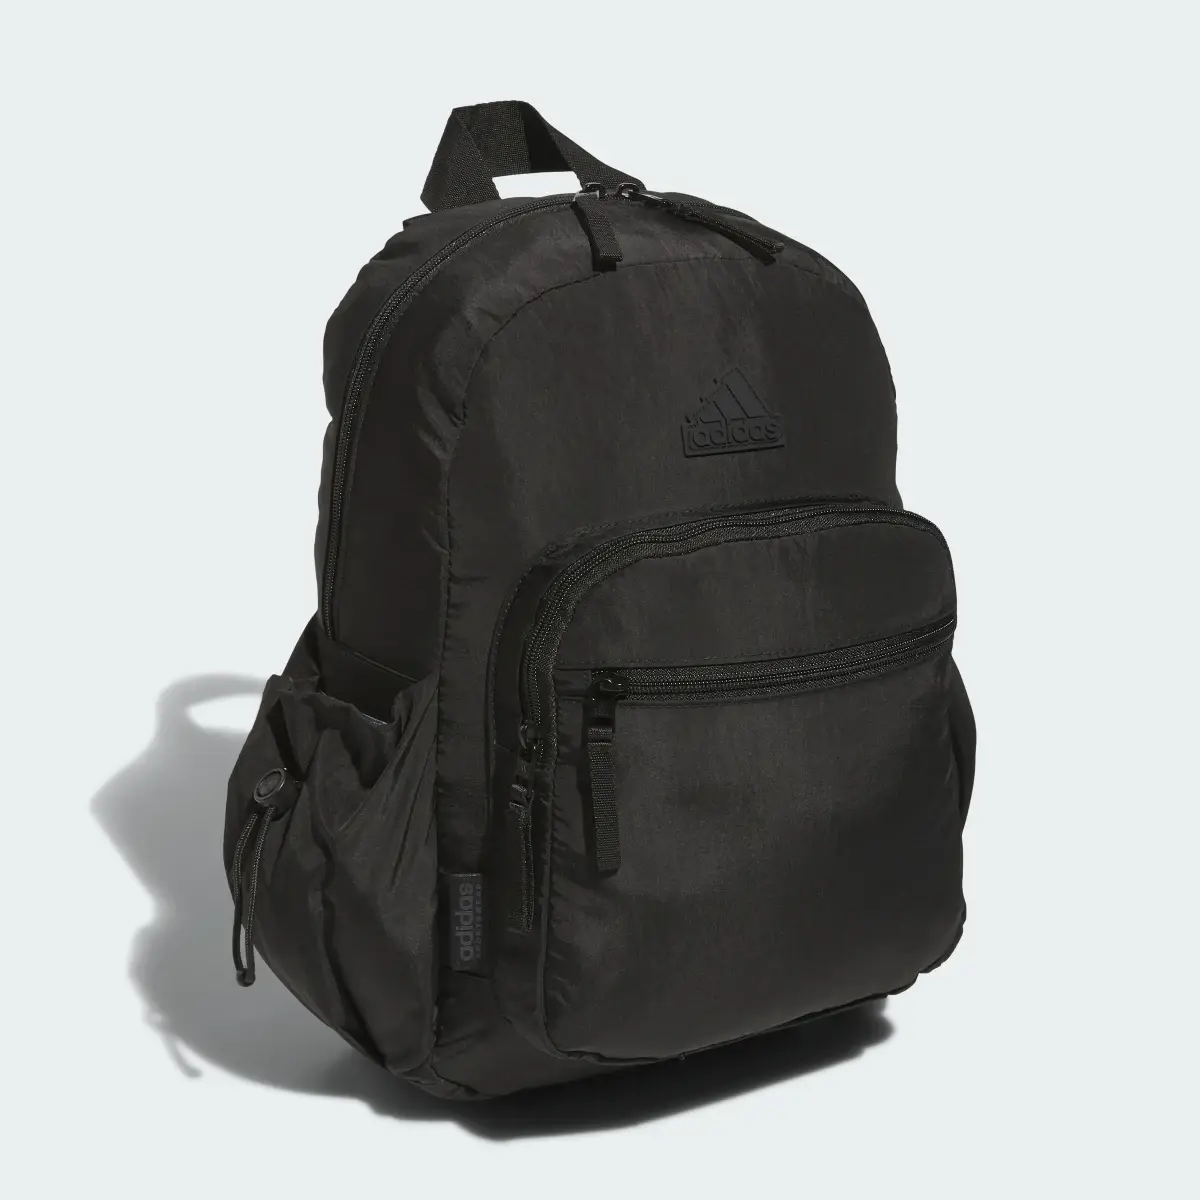 Adidas Weekender Backpack. 3